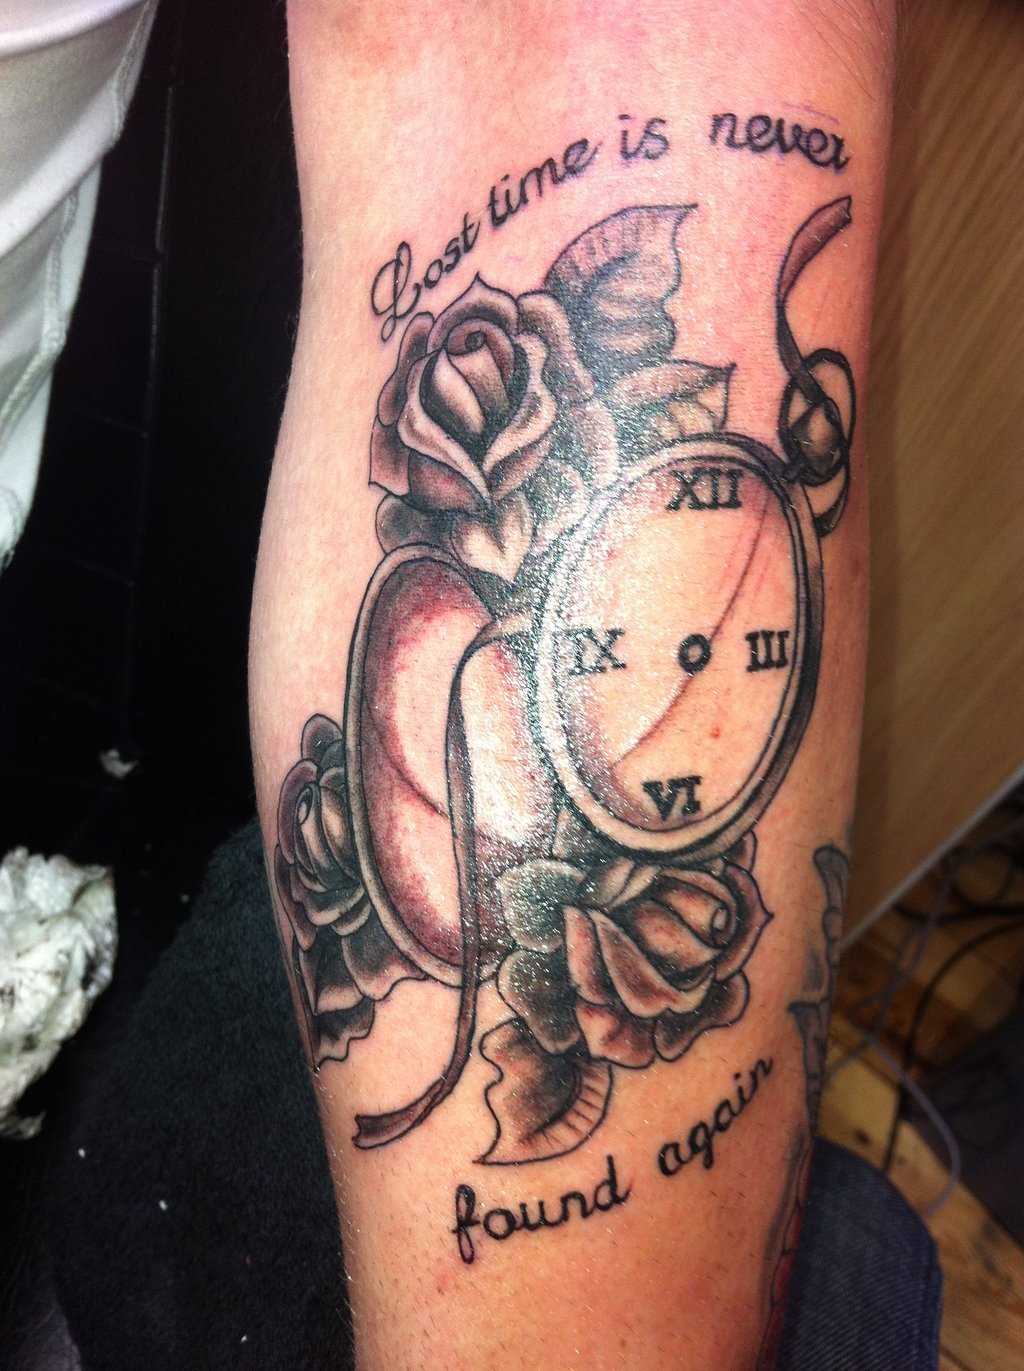 A tatuagem do cara no antebraço - relógio de bolso, rosas e legenda em inglês